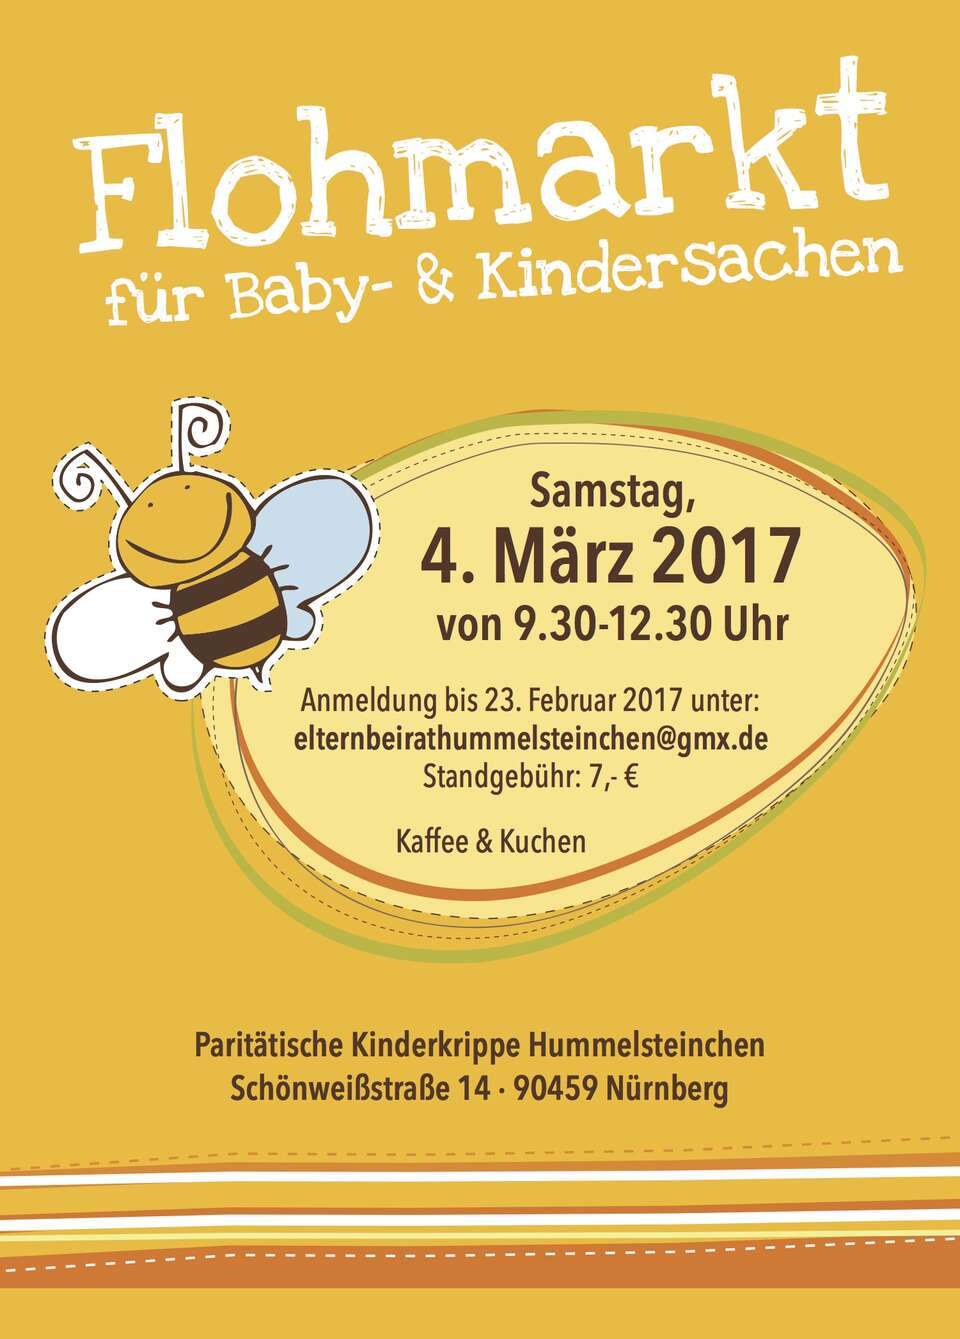 Flohmarkt für Baby- und Kindersachen am Samstag, dem 04.03.2017 